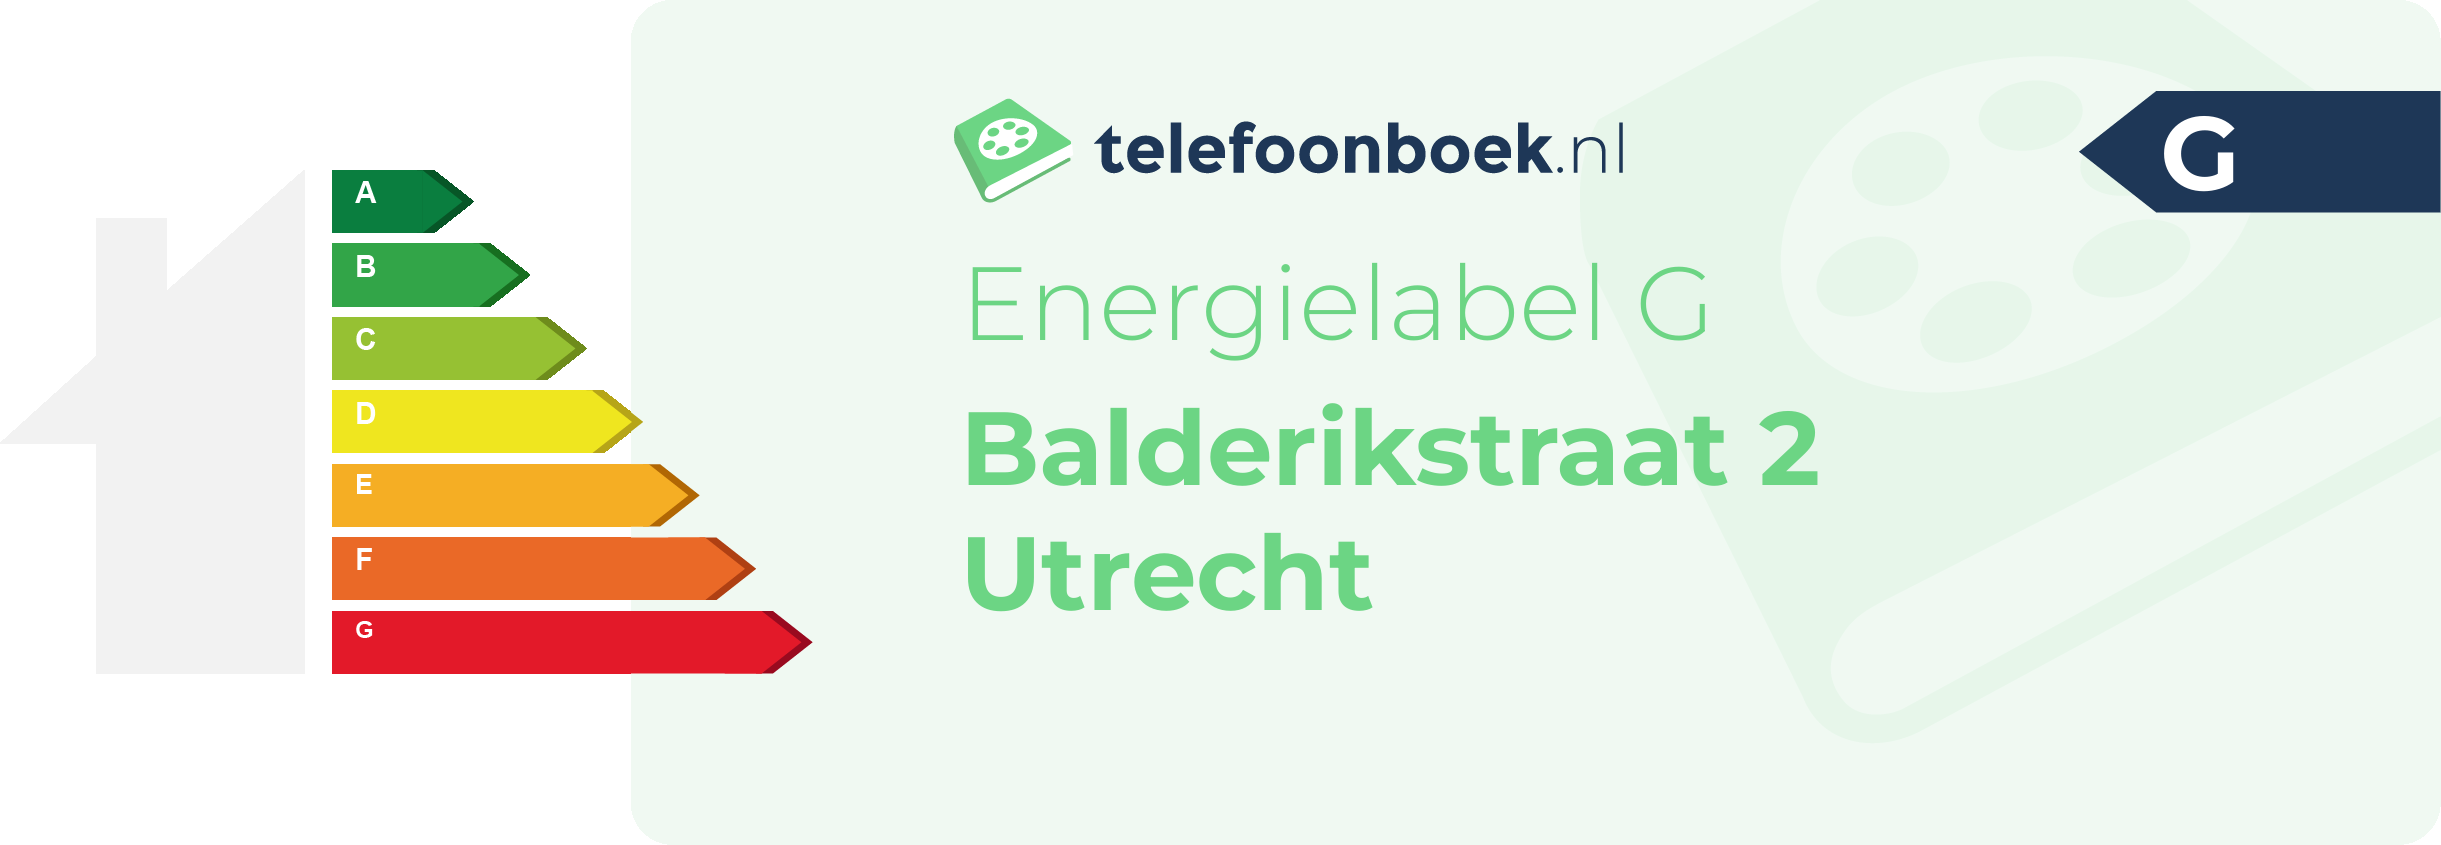 Energielabel Balderikstraat 2 Utrecht